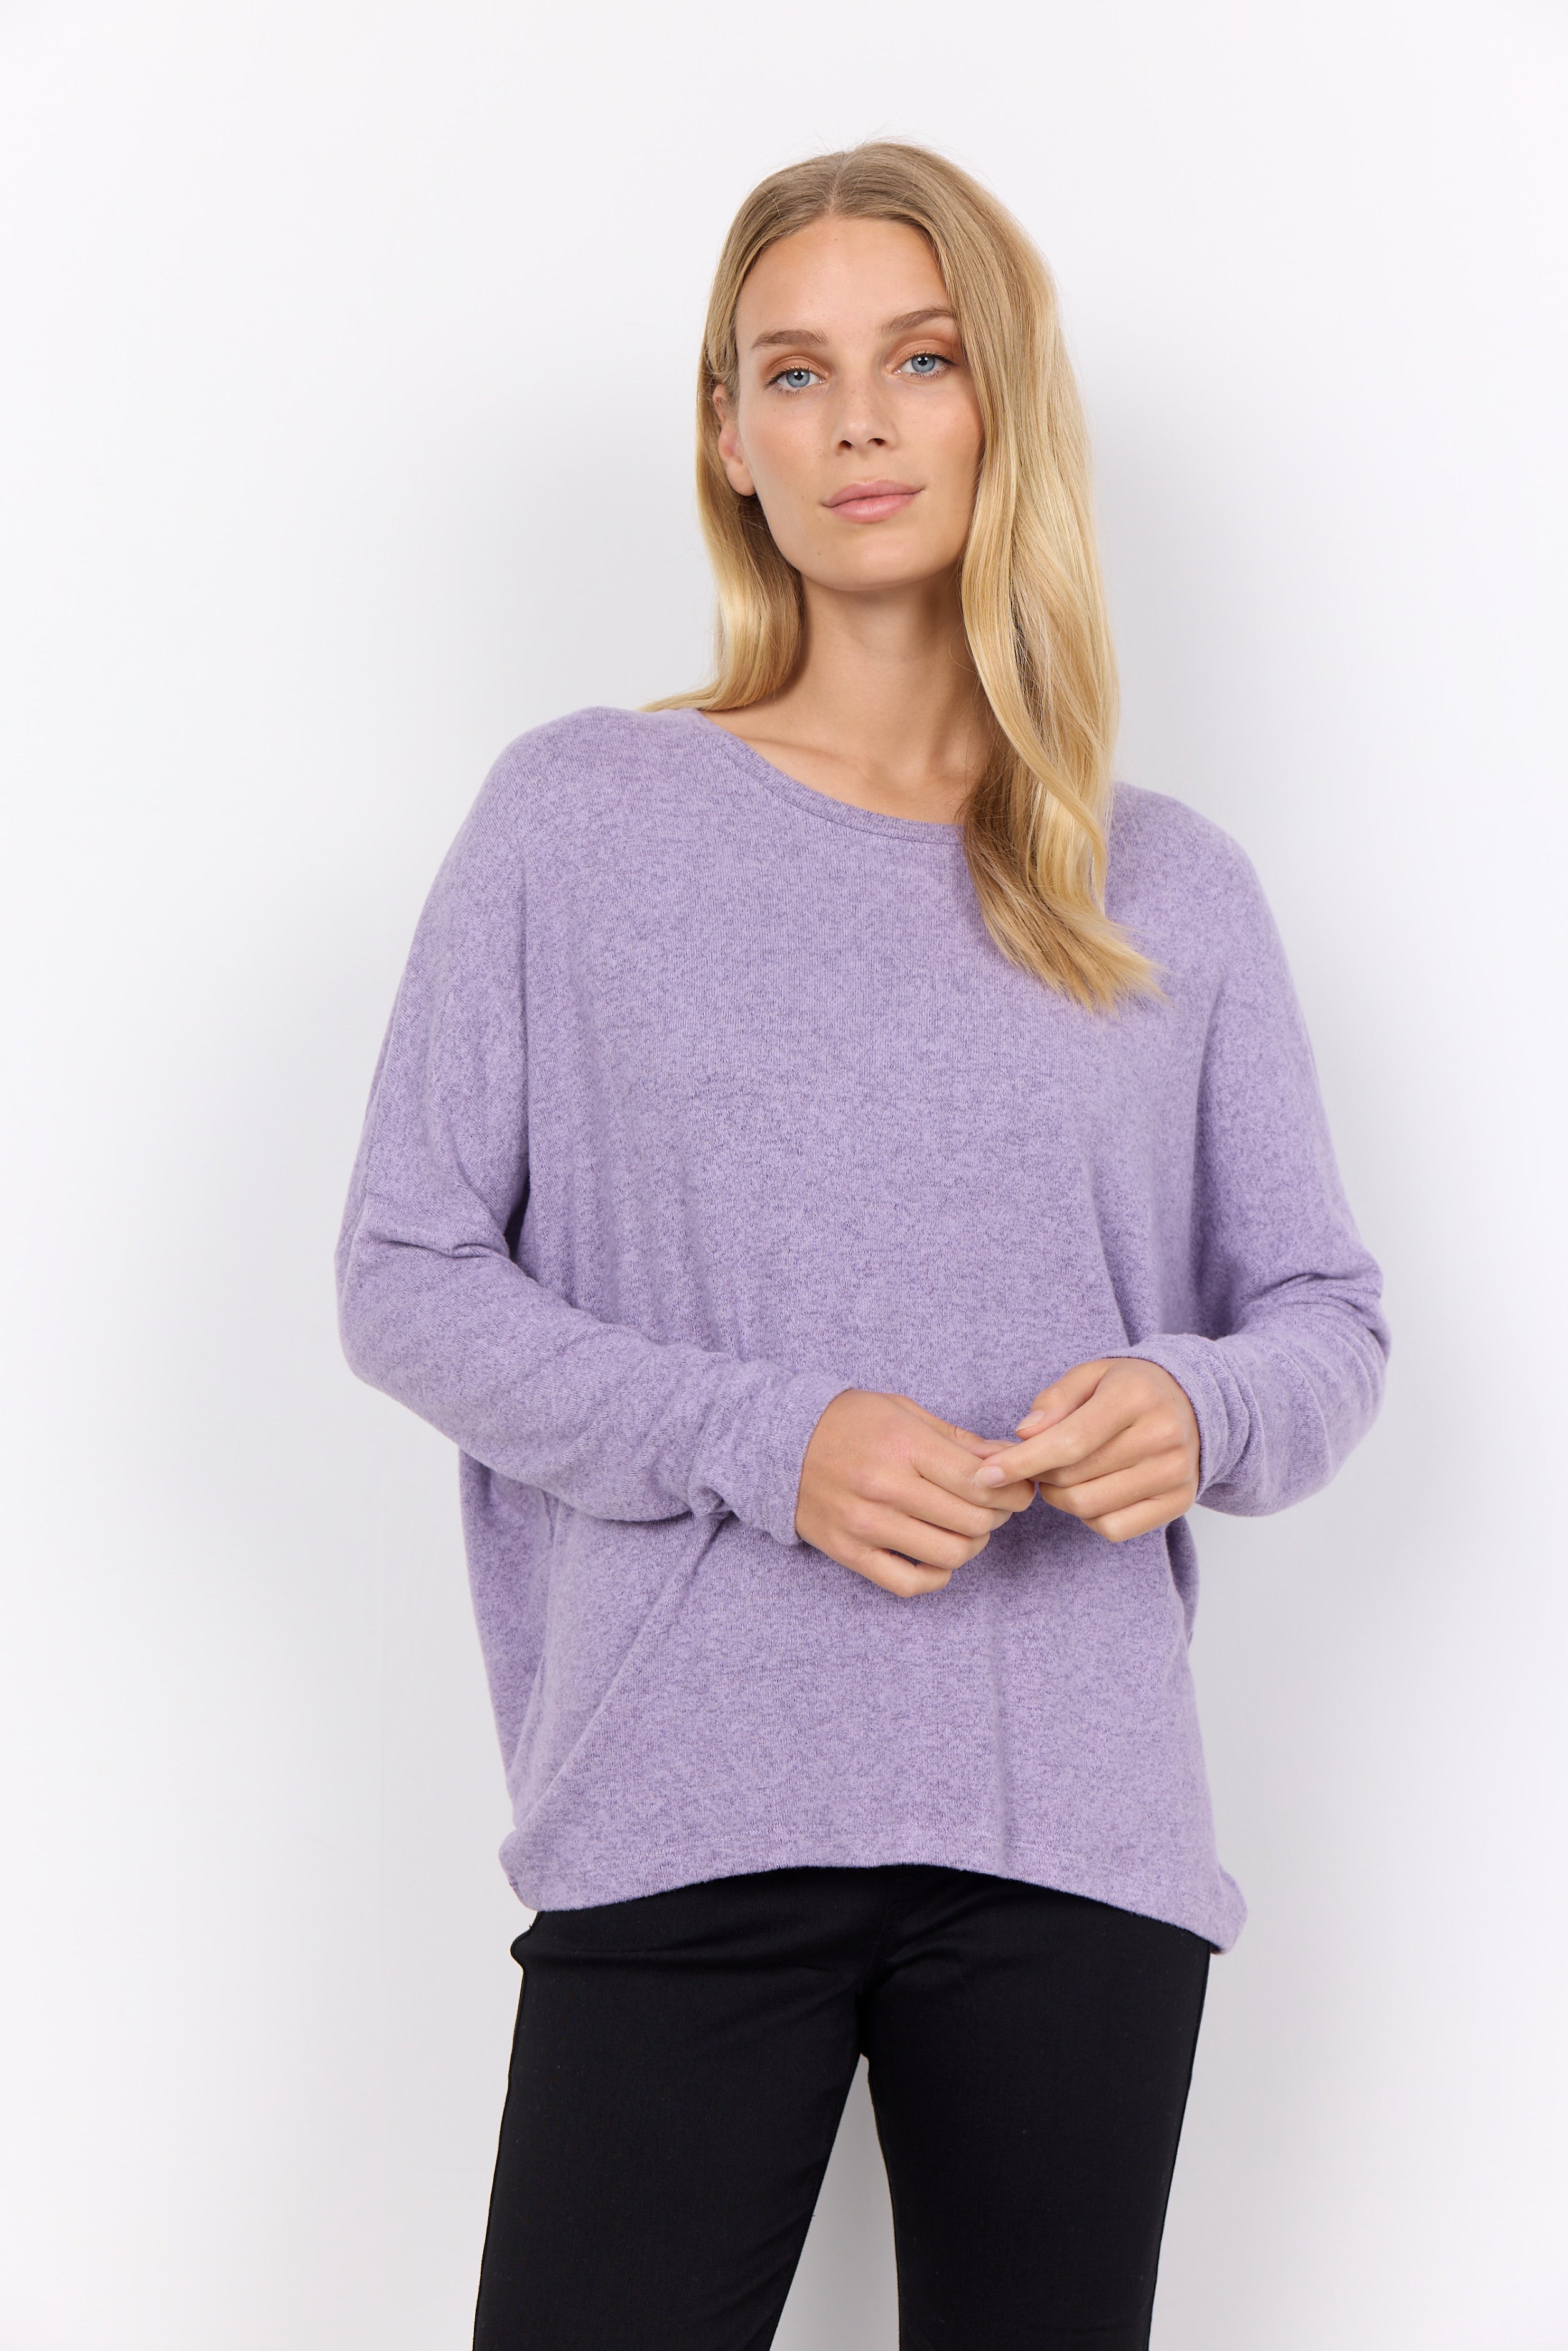 Biara 1 Lilac Sweater - 24788